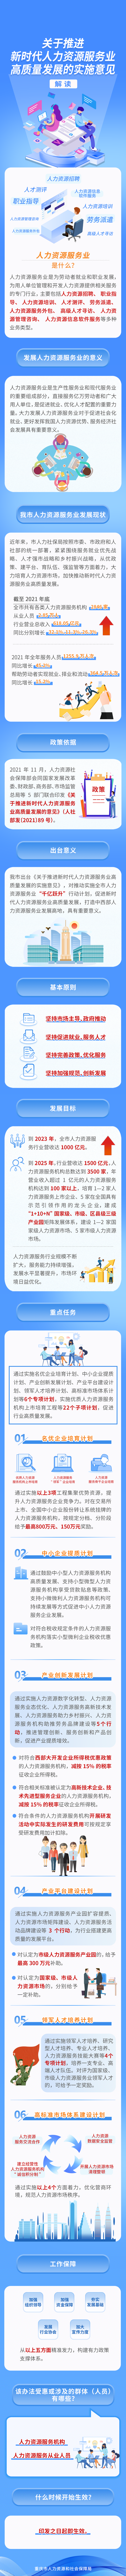 重庆推进新时代人力资源服务业高质量发展有这些任务。重庆市人力社保局 供图
 